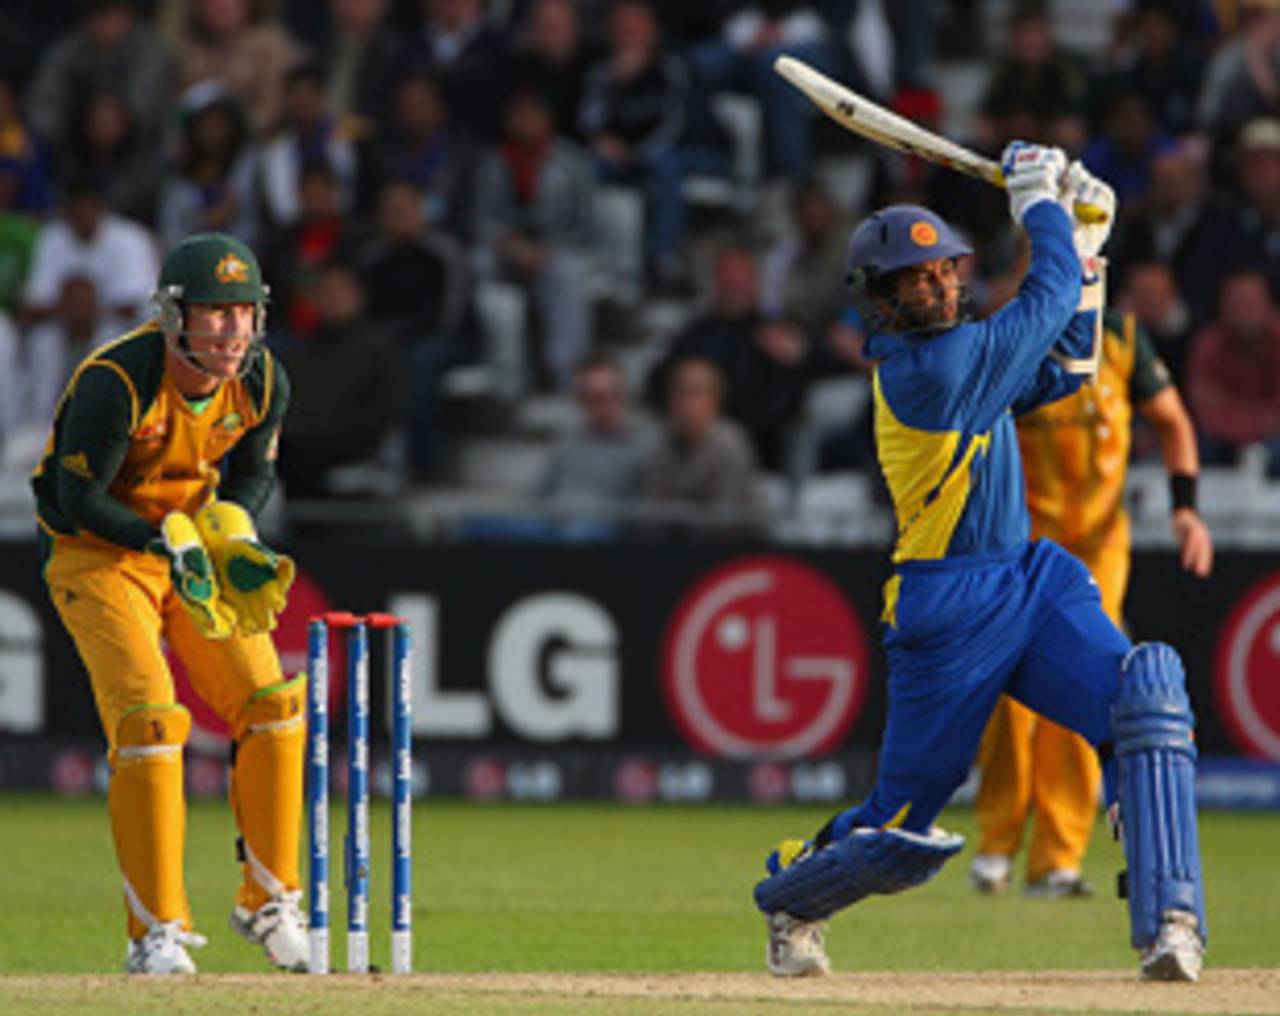 Tillakaratne Dilshan slams another four during his fifty against Australia, Australia v Sri Lanka, ICC World Twenty20, Trent Bridge, June 8, 2009